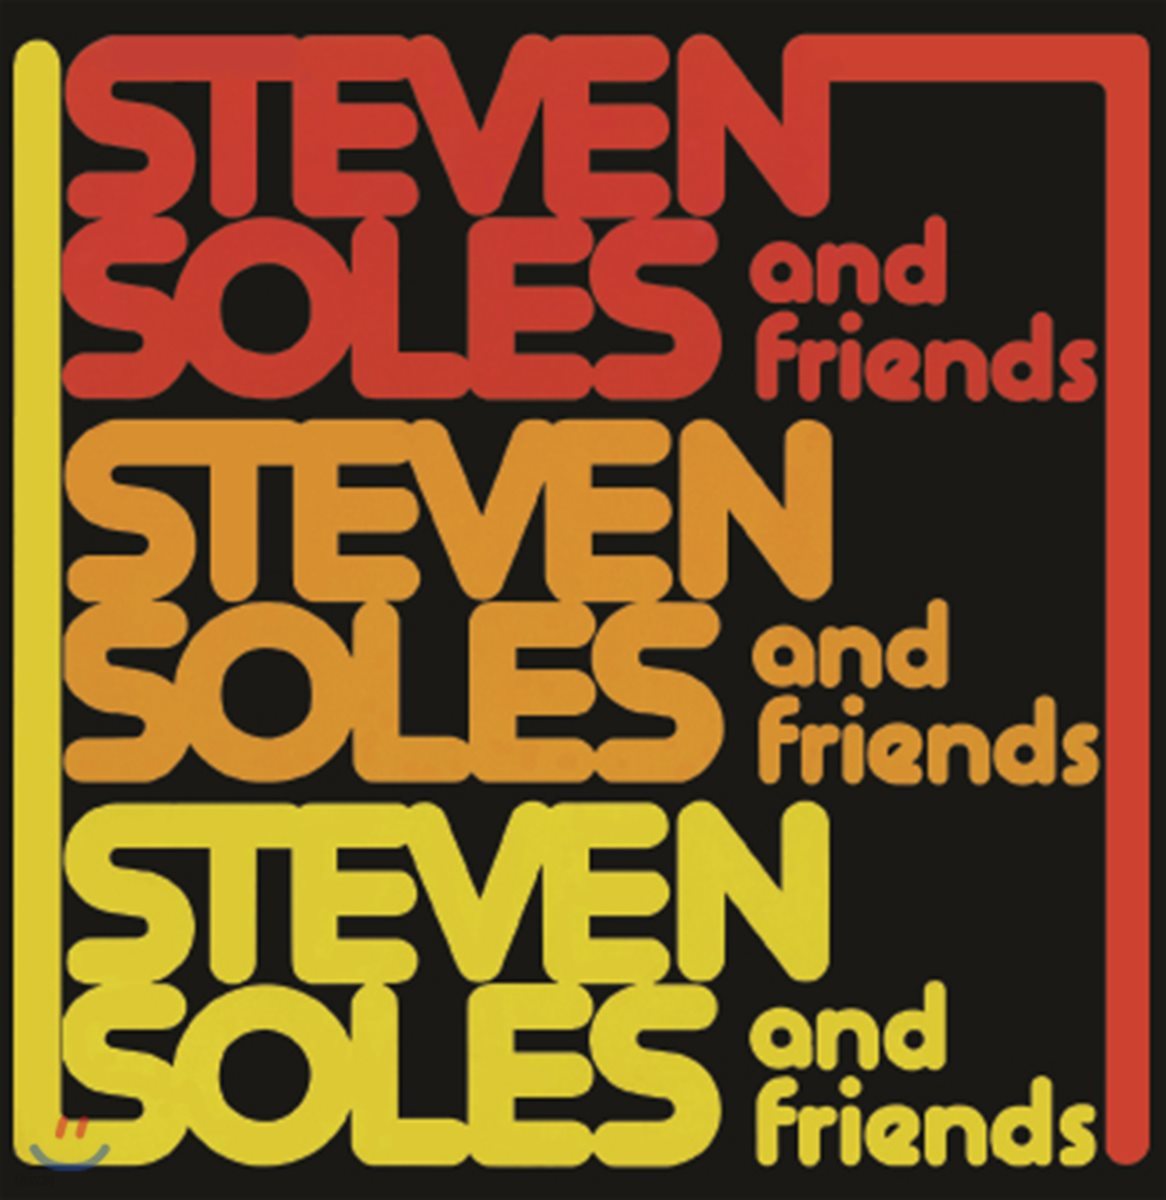 Steven Soles And Friends - Steven Soles And Friends